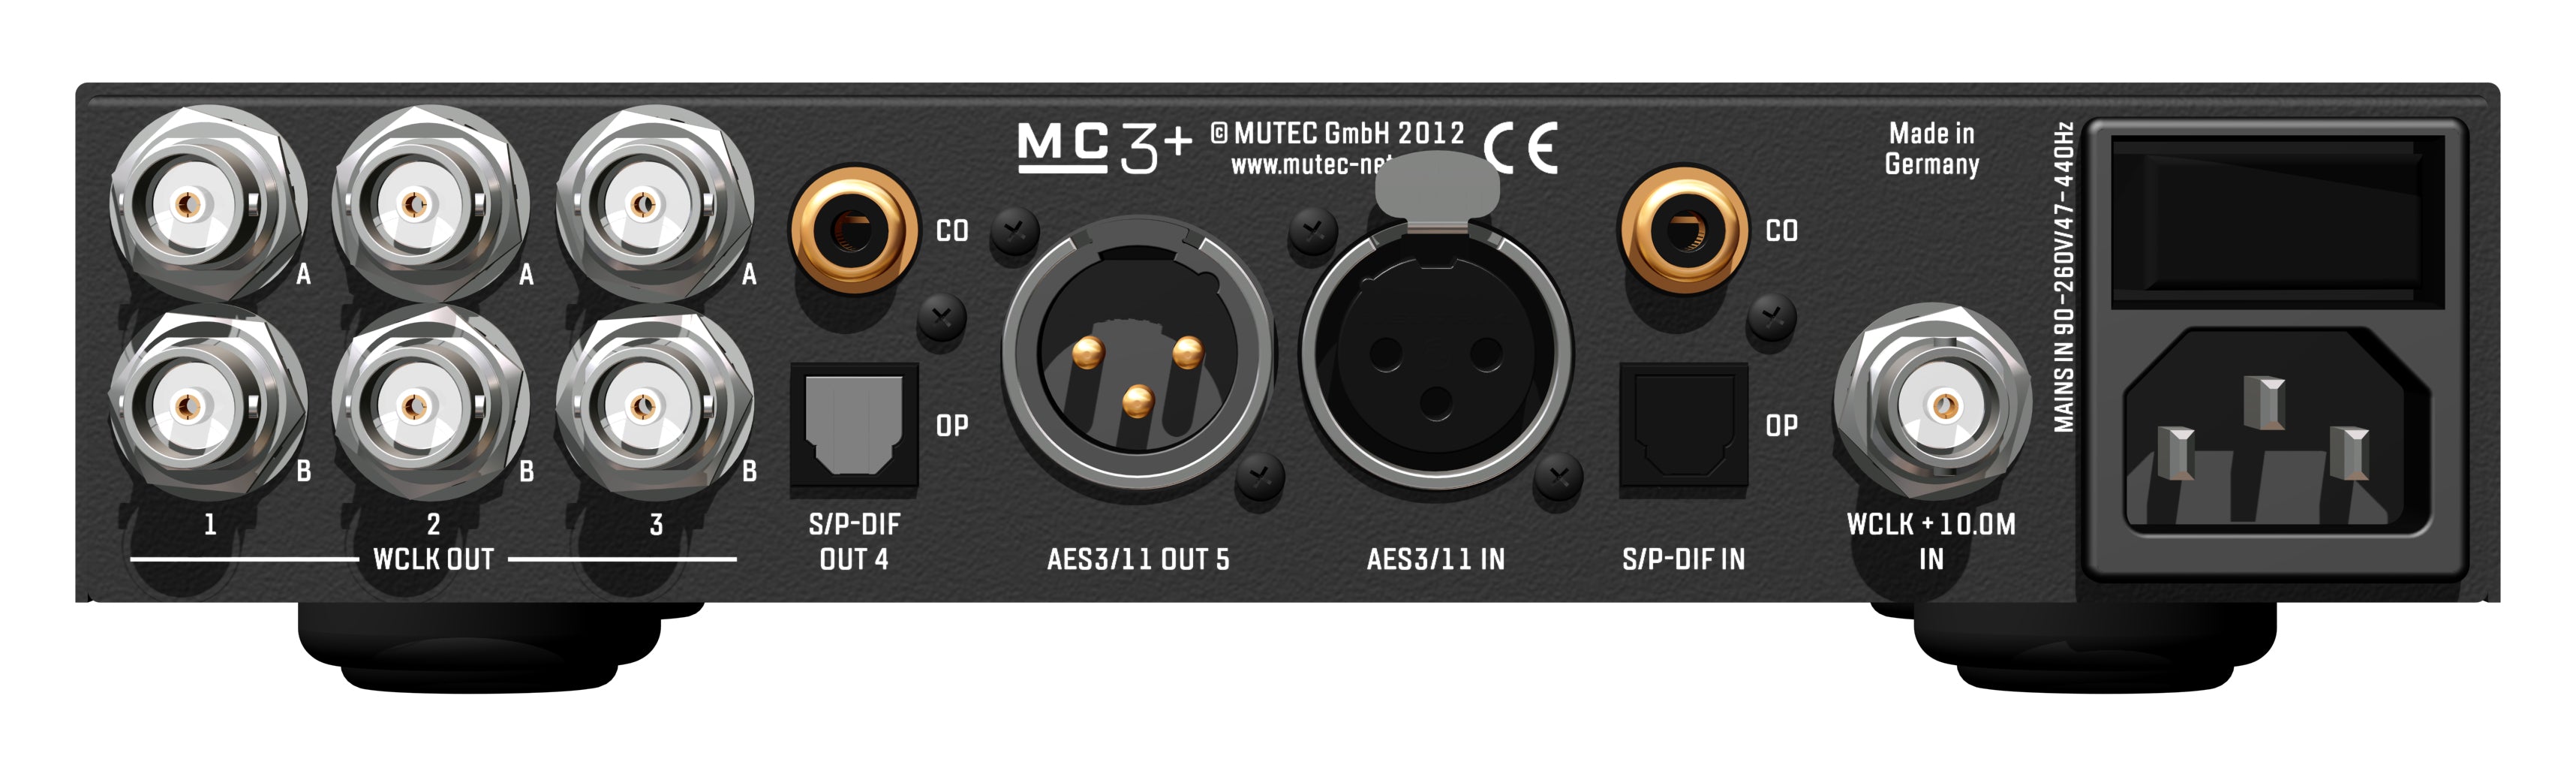 MUTEC MC3+ Black